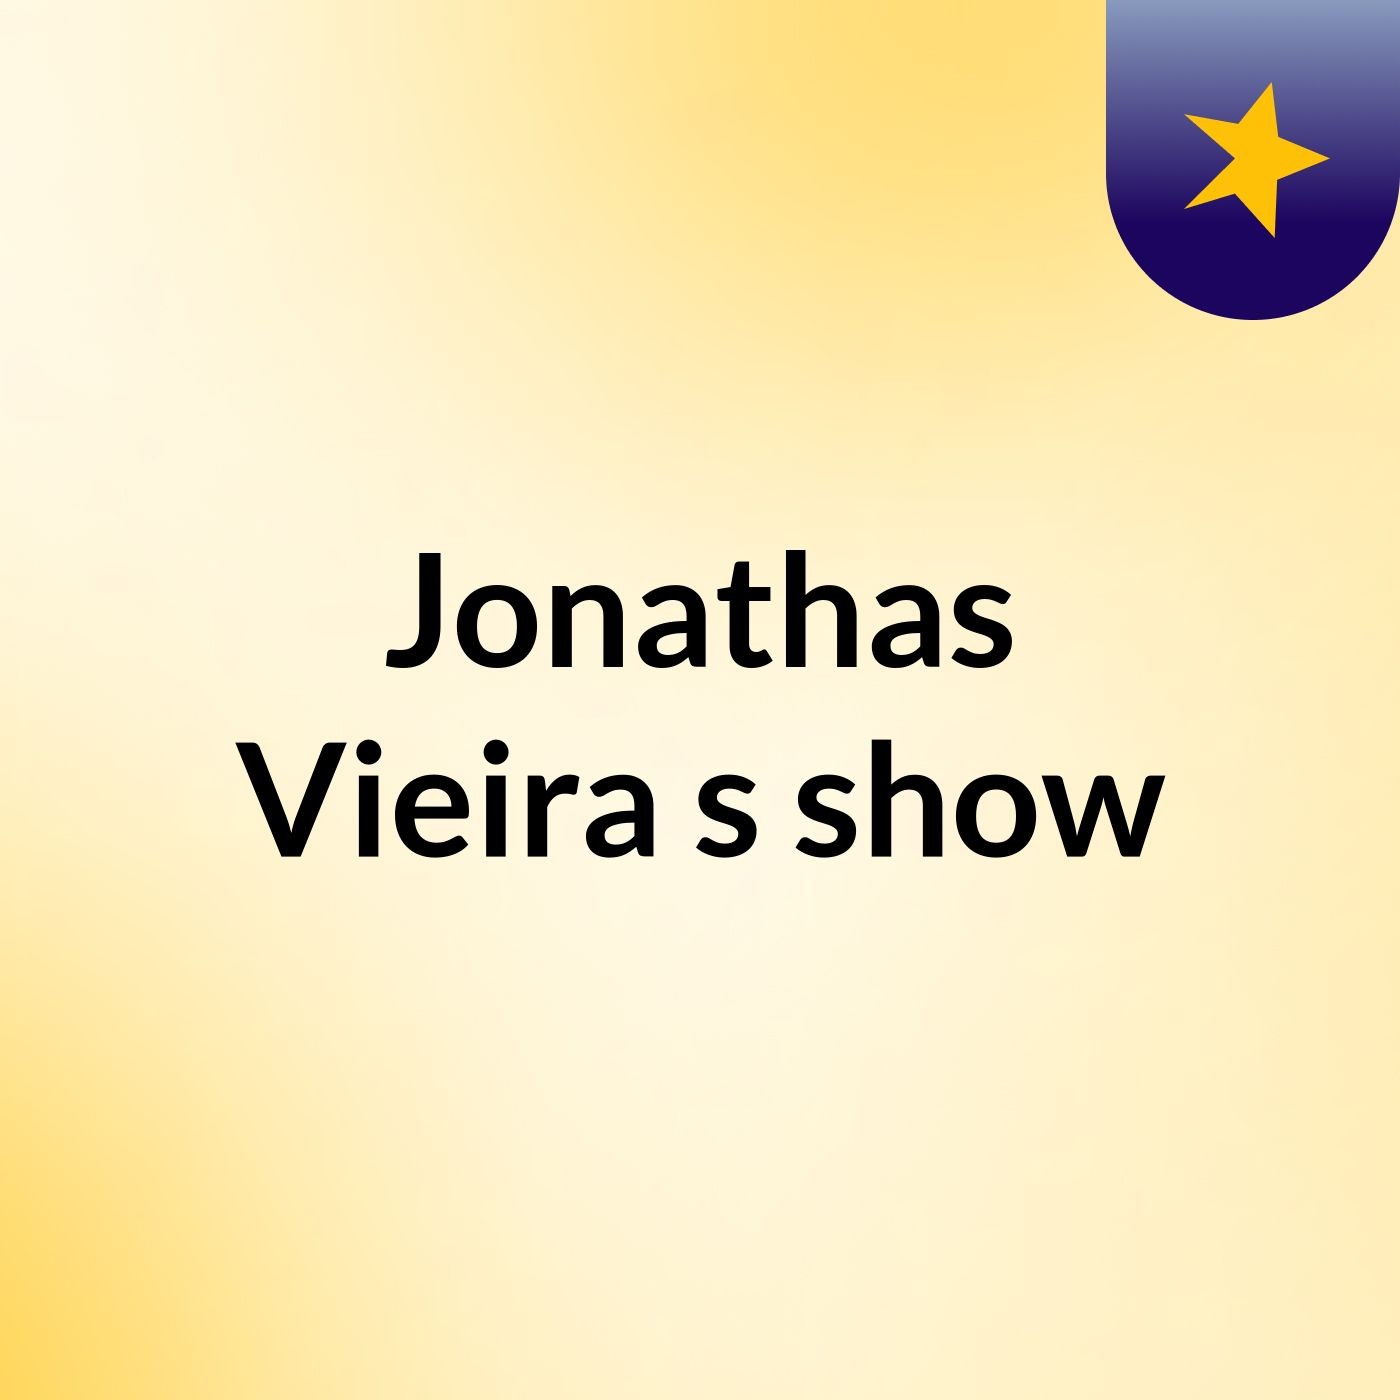 Jonathas Vieira's show